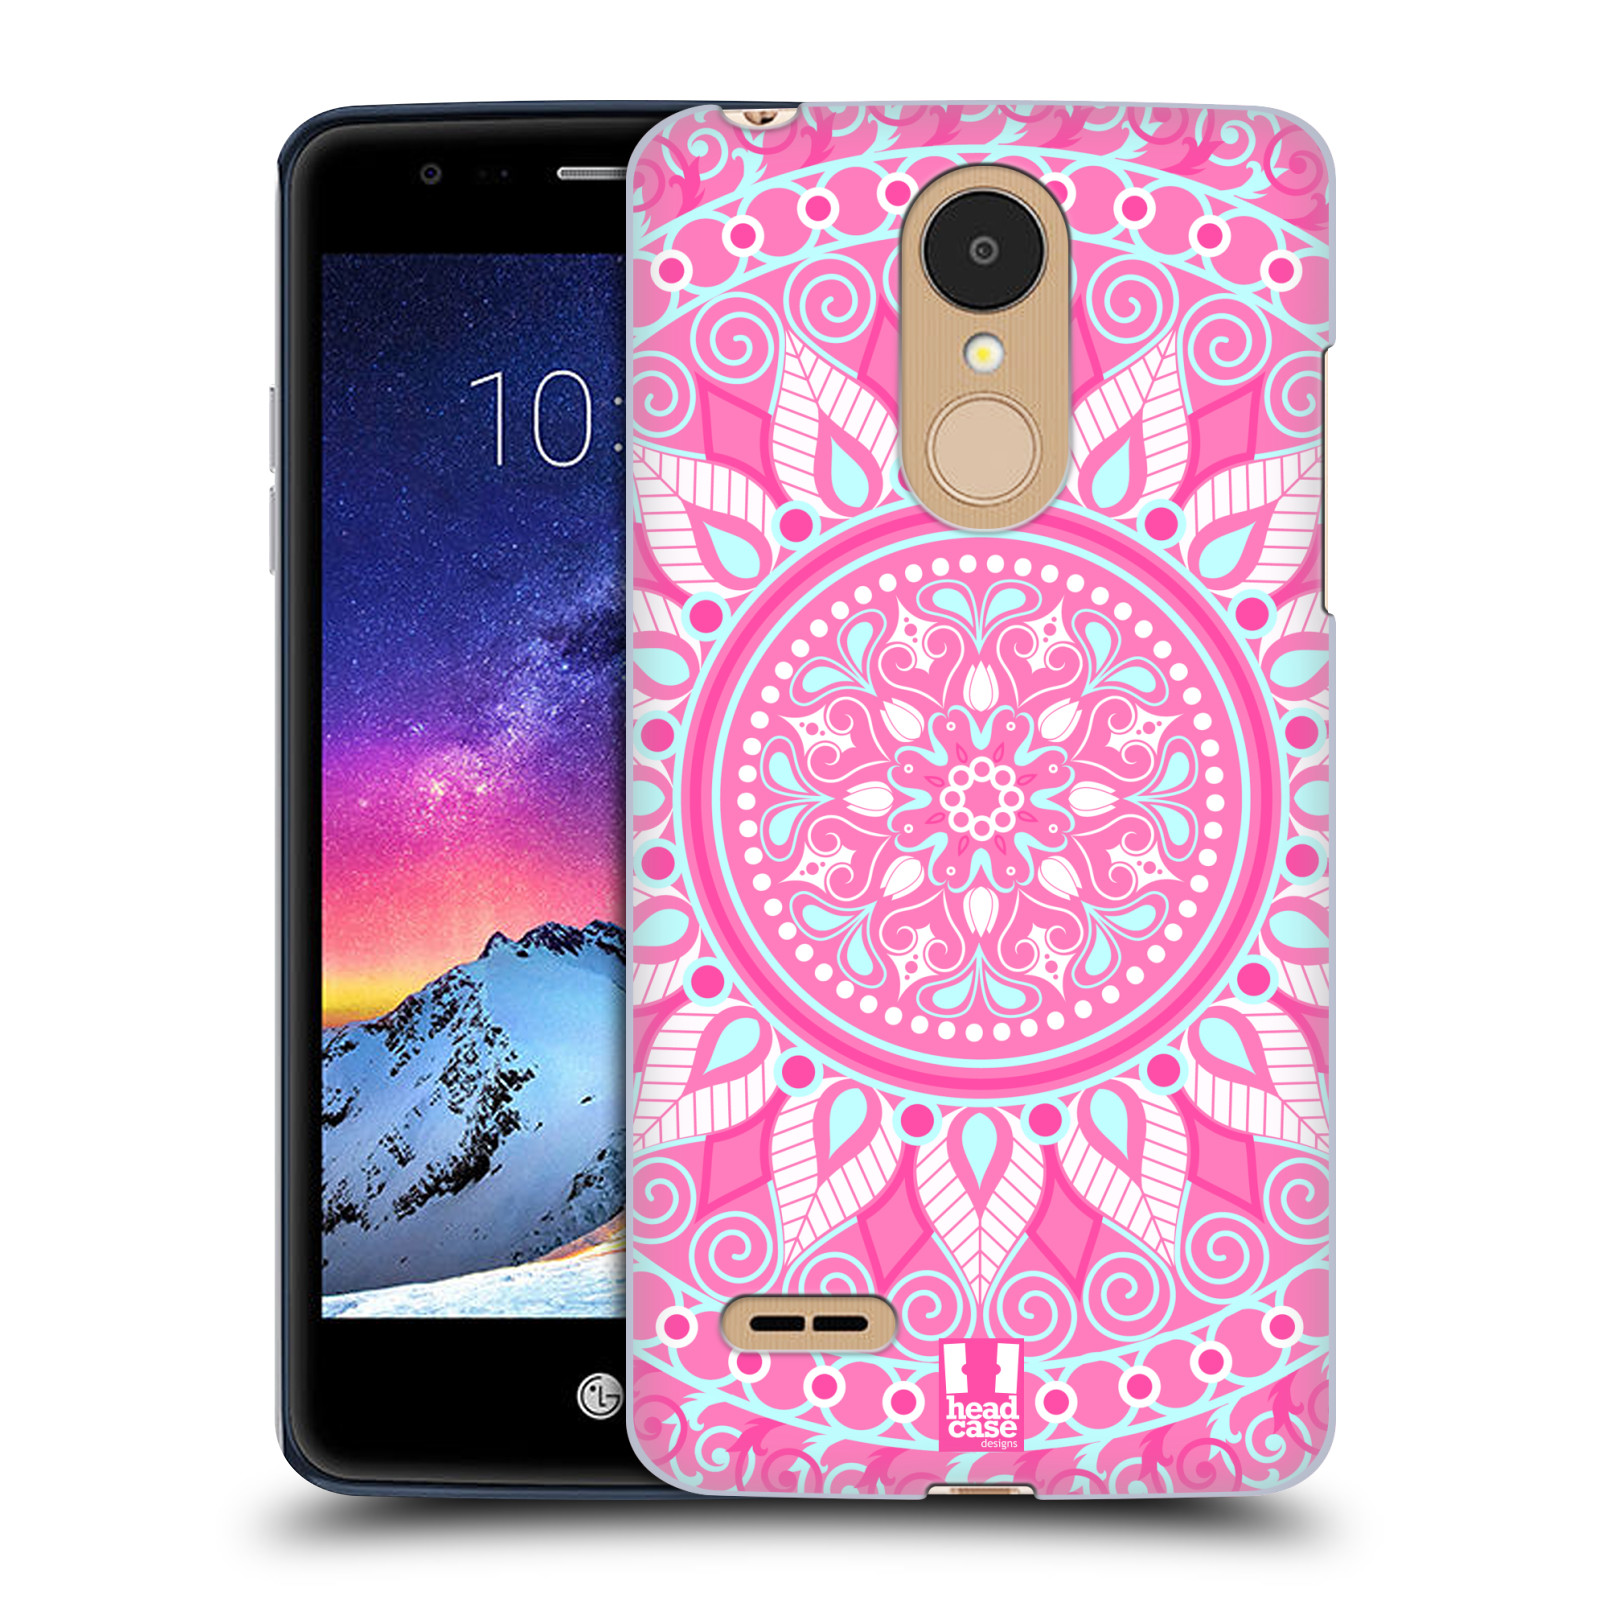 HEAD CASE plastový obal na mobil LG K9 / K8 2018 vzor Indie Mandala slunce barevný motiv RŮŽOVÁ